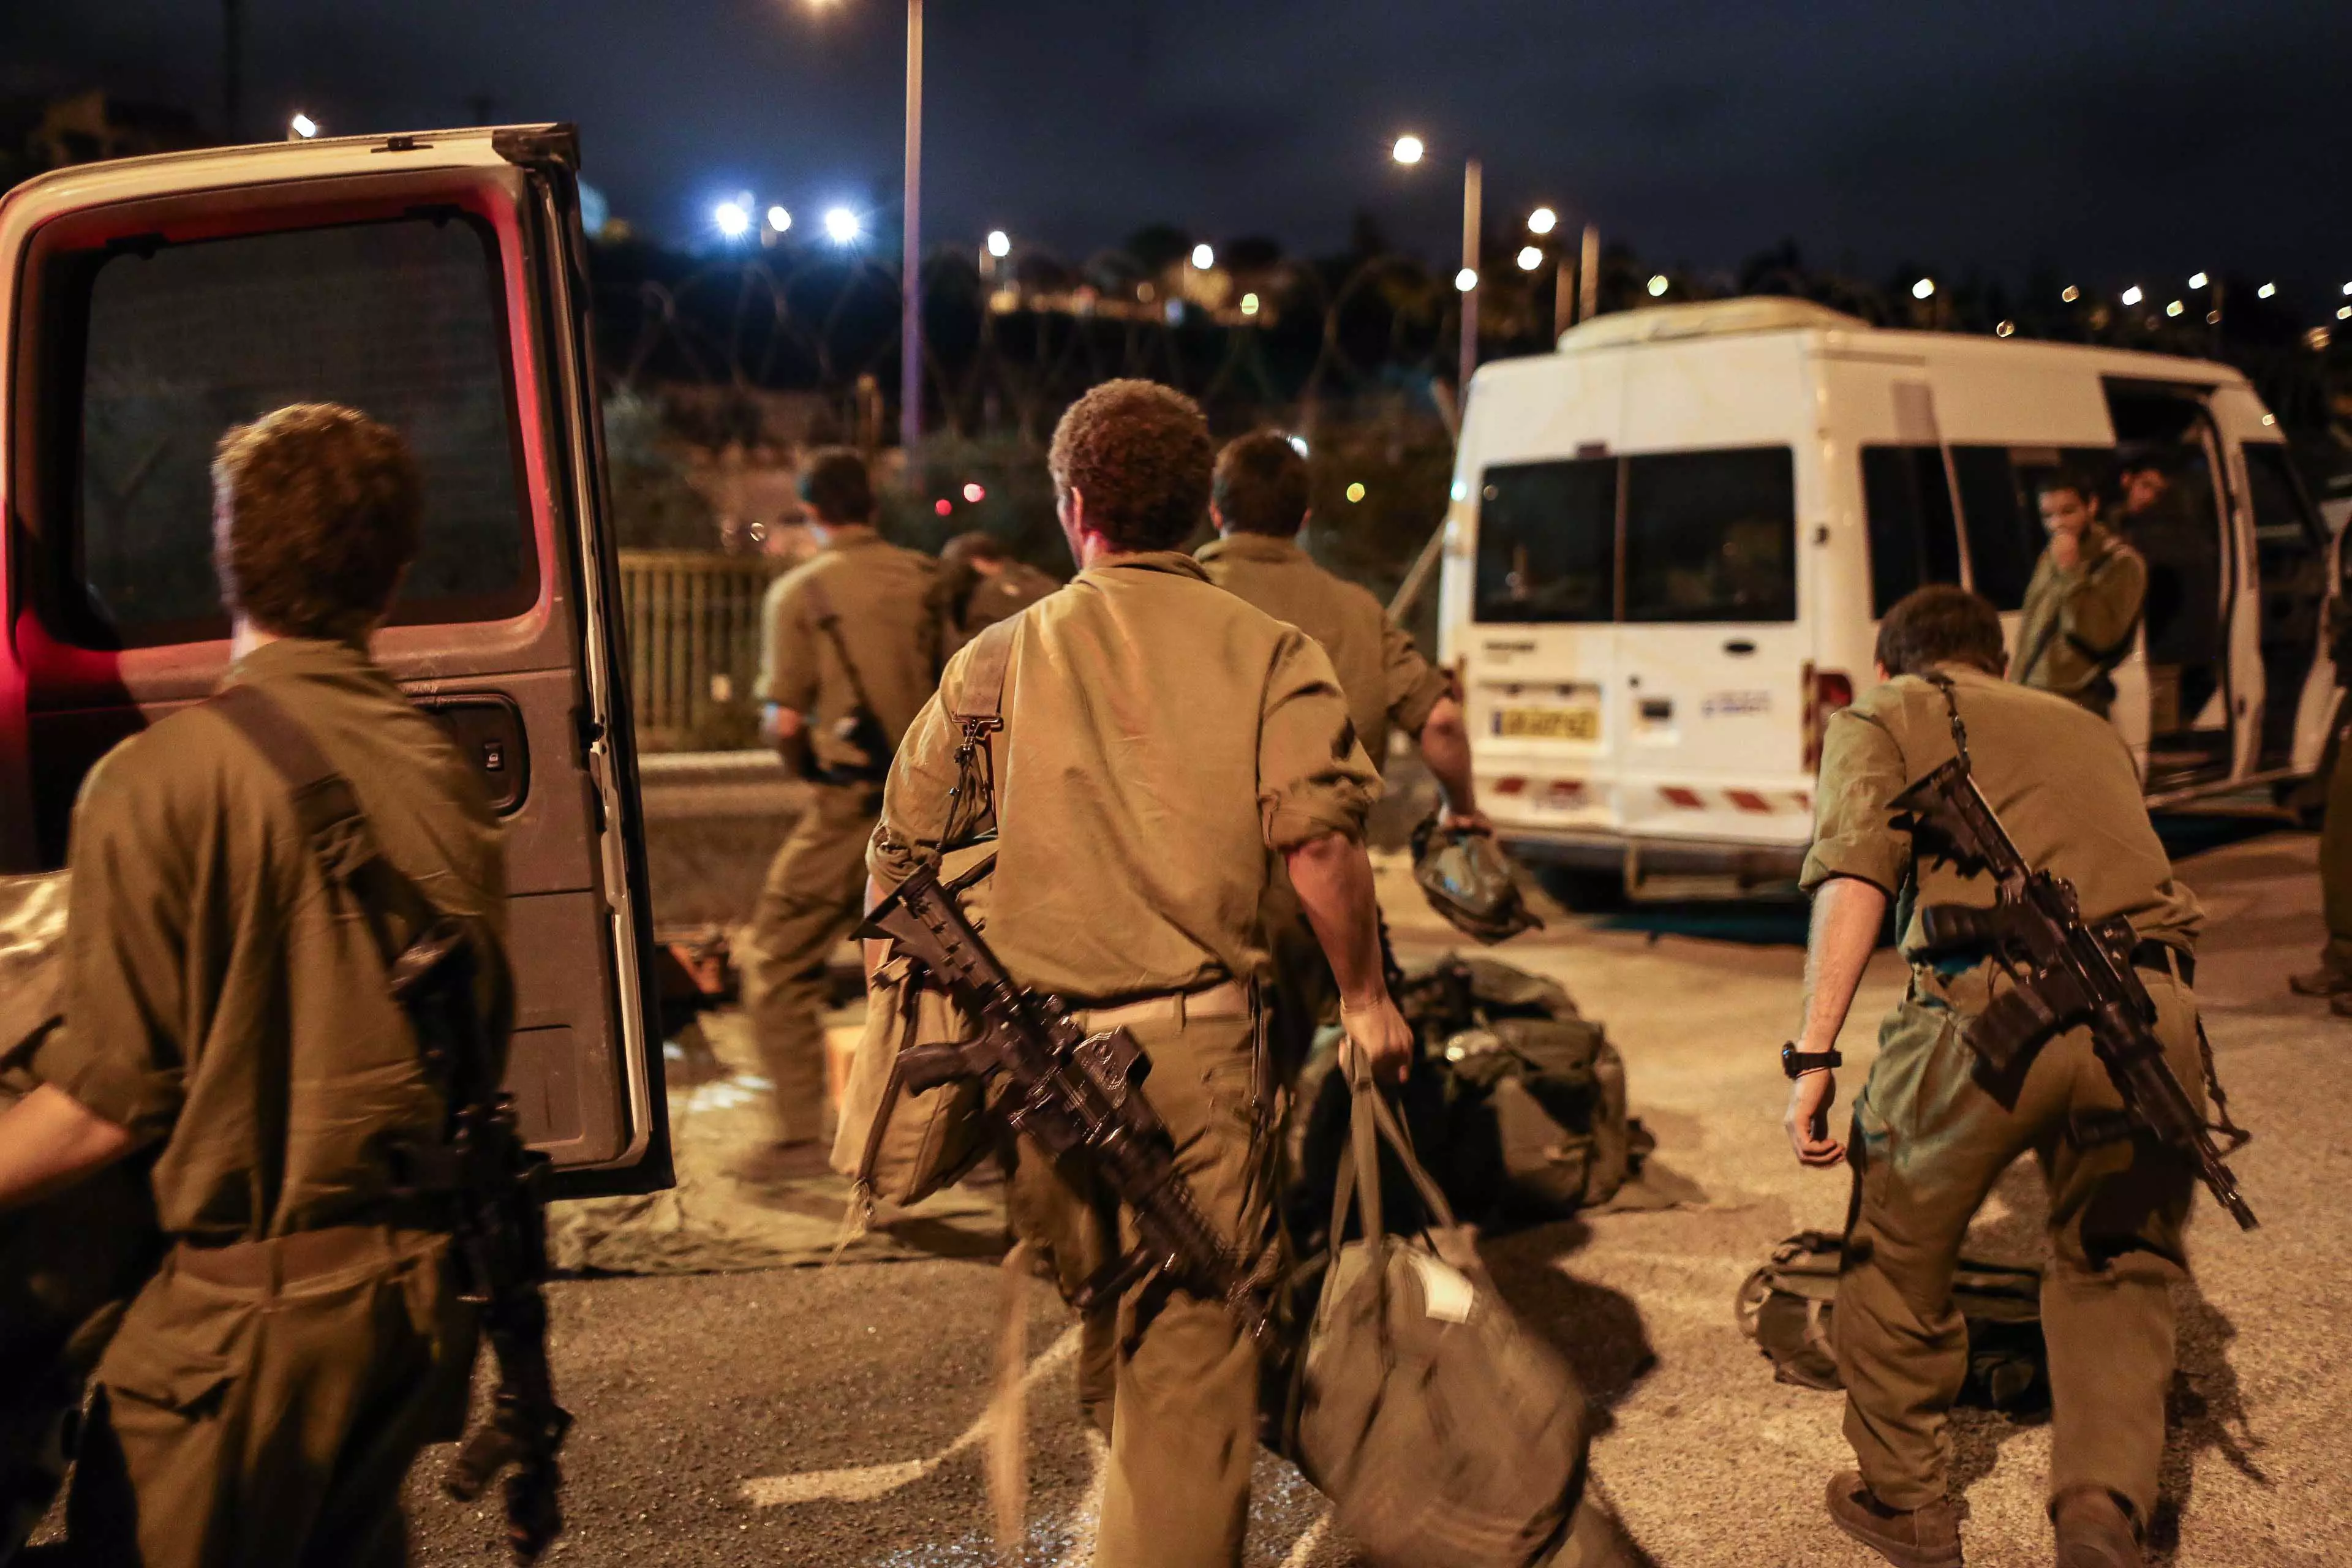 "אירוע אמת - ירי בבית שלי", הכוחות שהוקפצו לגזרה בליל האירוע